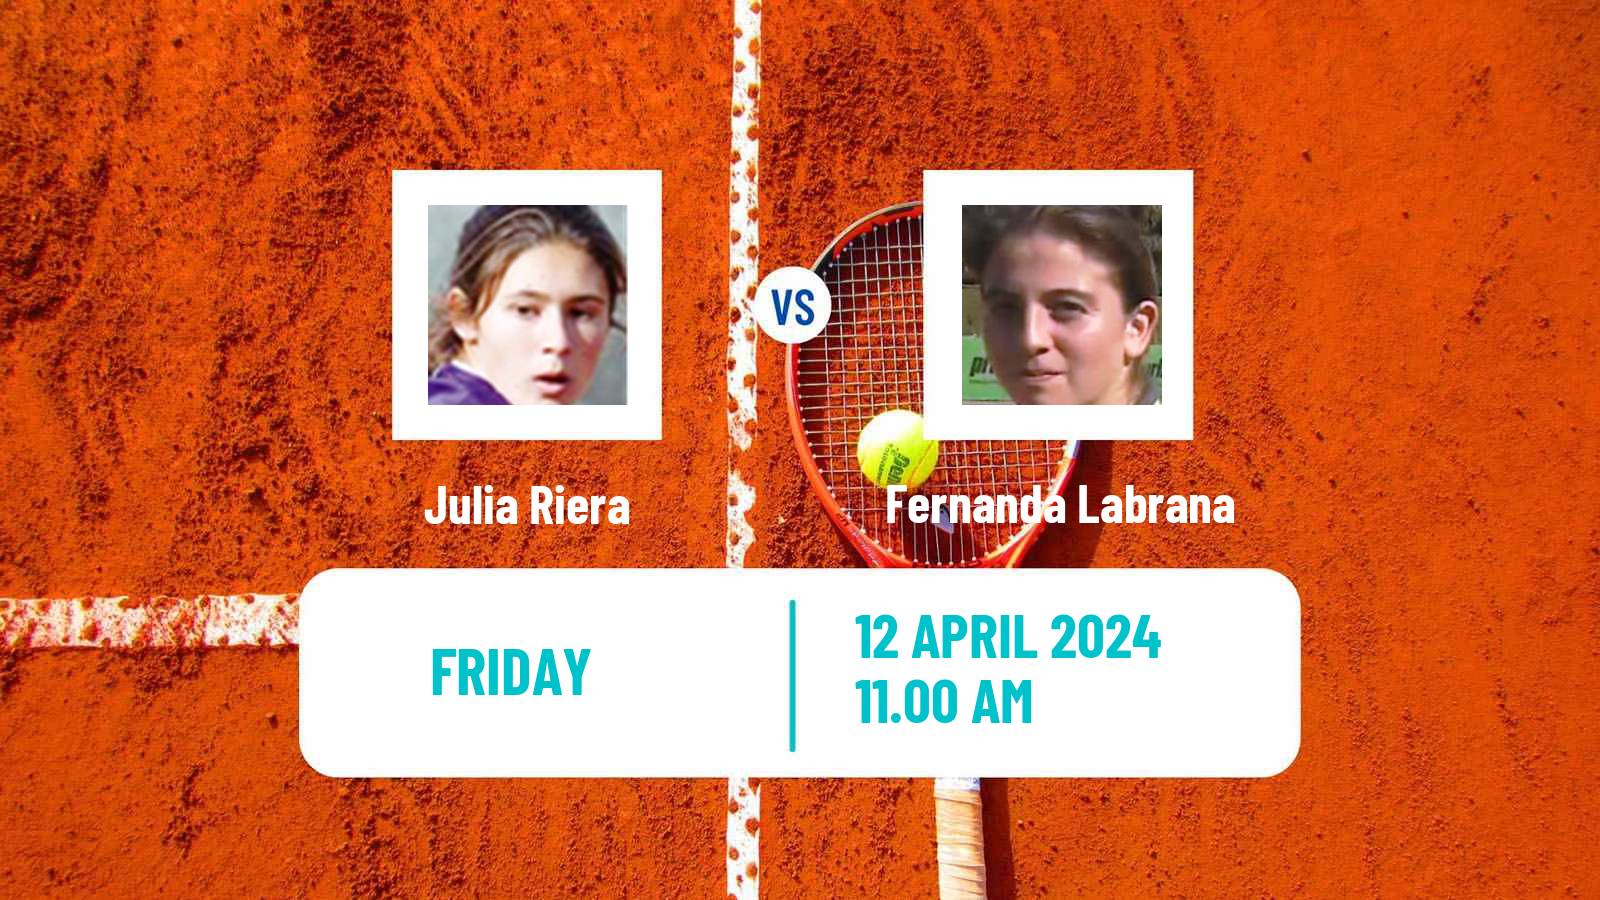 Tennis WTA Billie Jean King Cup Group I Julia Riera - Fernanda Labrana